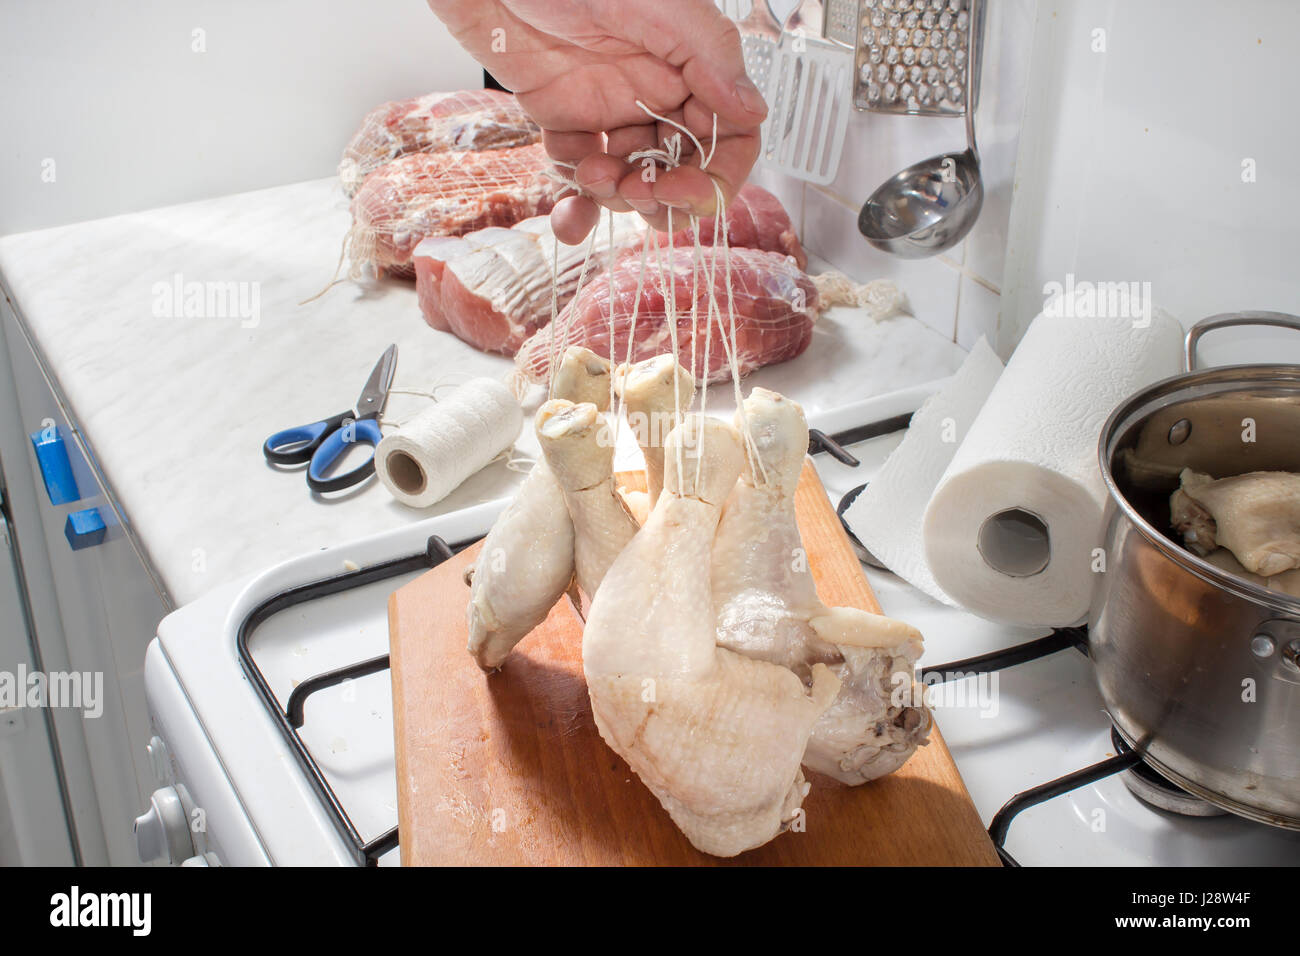 Preparación de la carne de pollo para fumadores. El embalaje de la carne en una salchicha net. Carne preparada para fumar Foto de stock